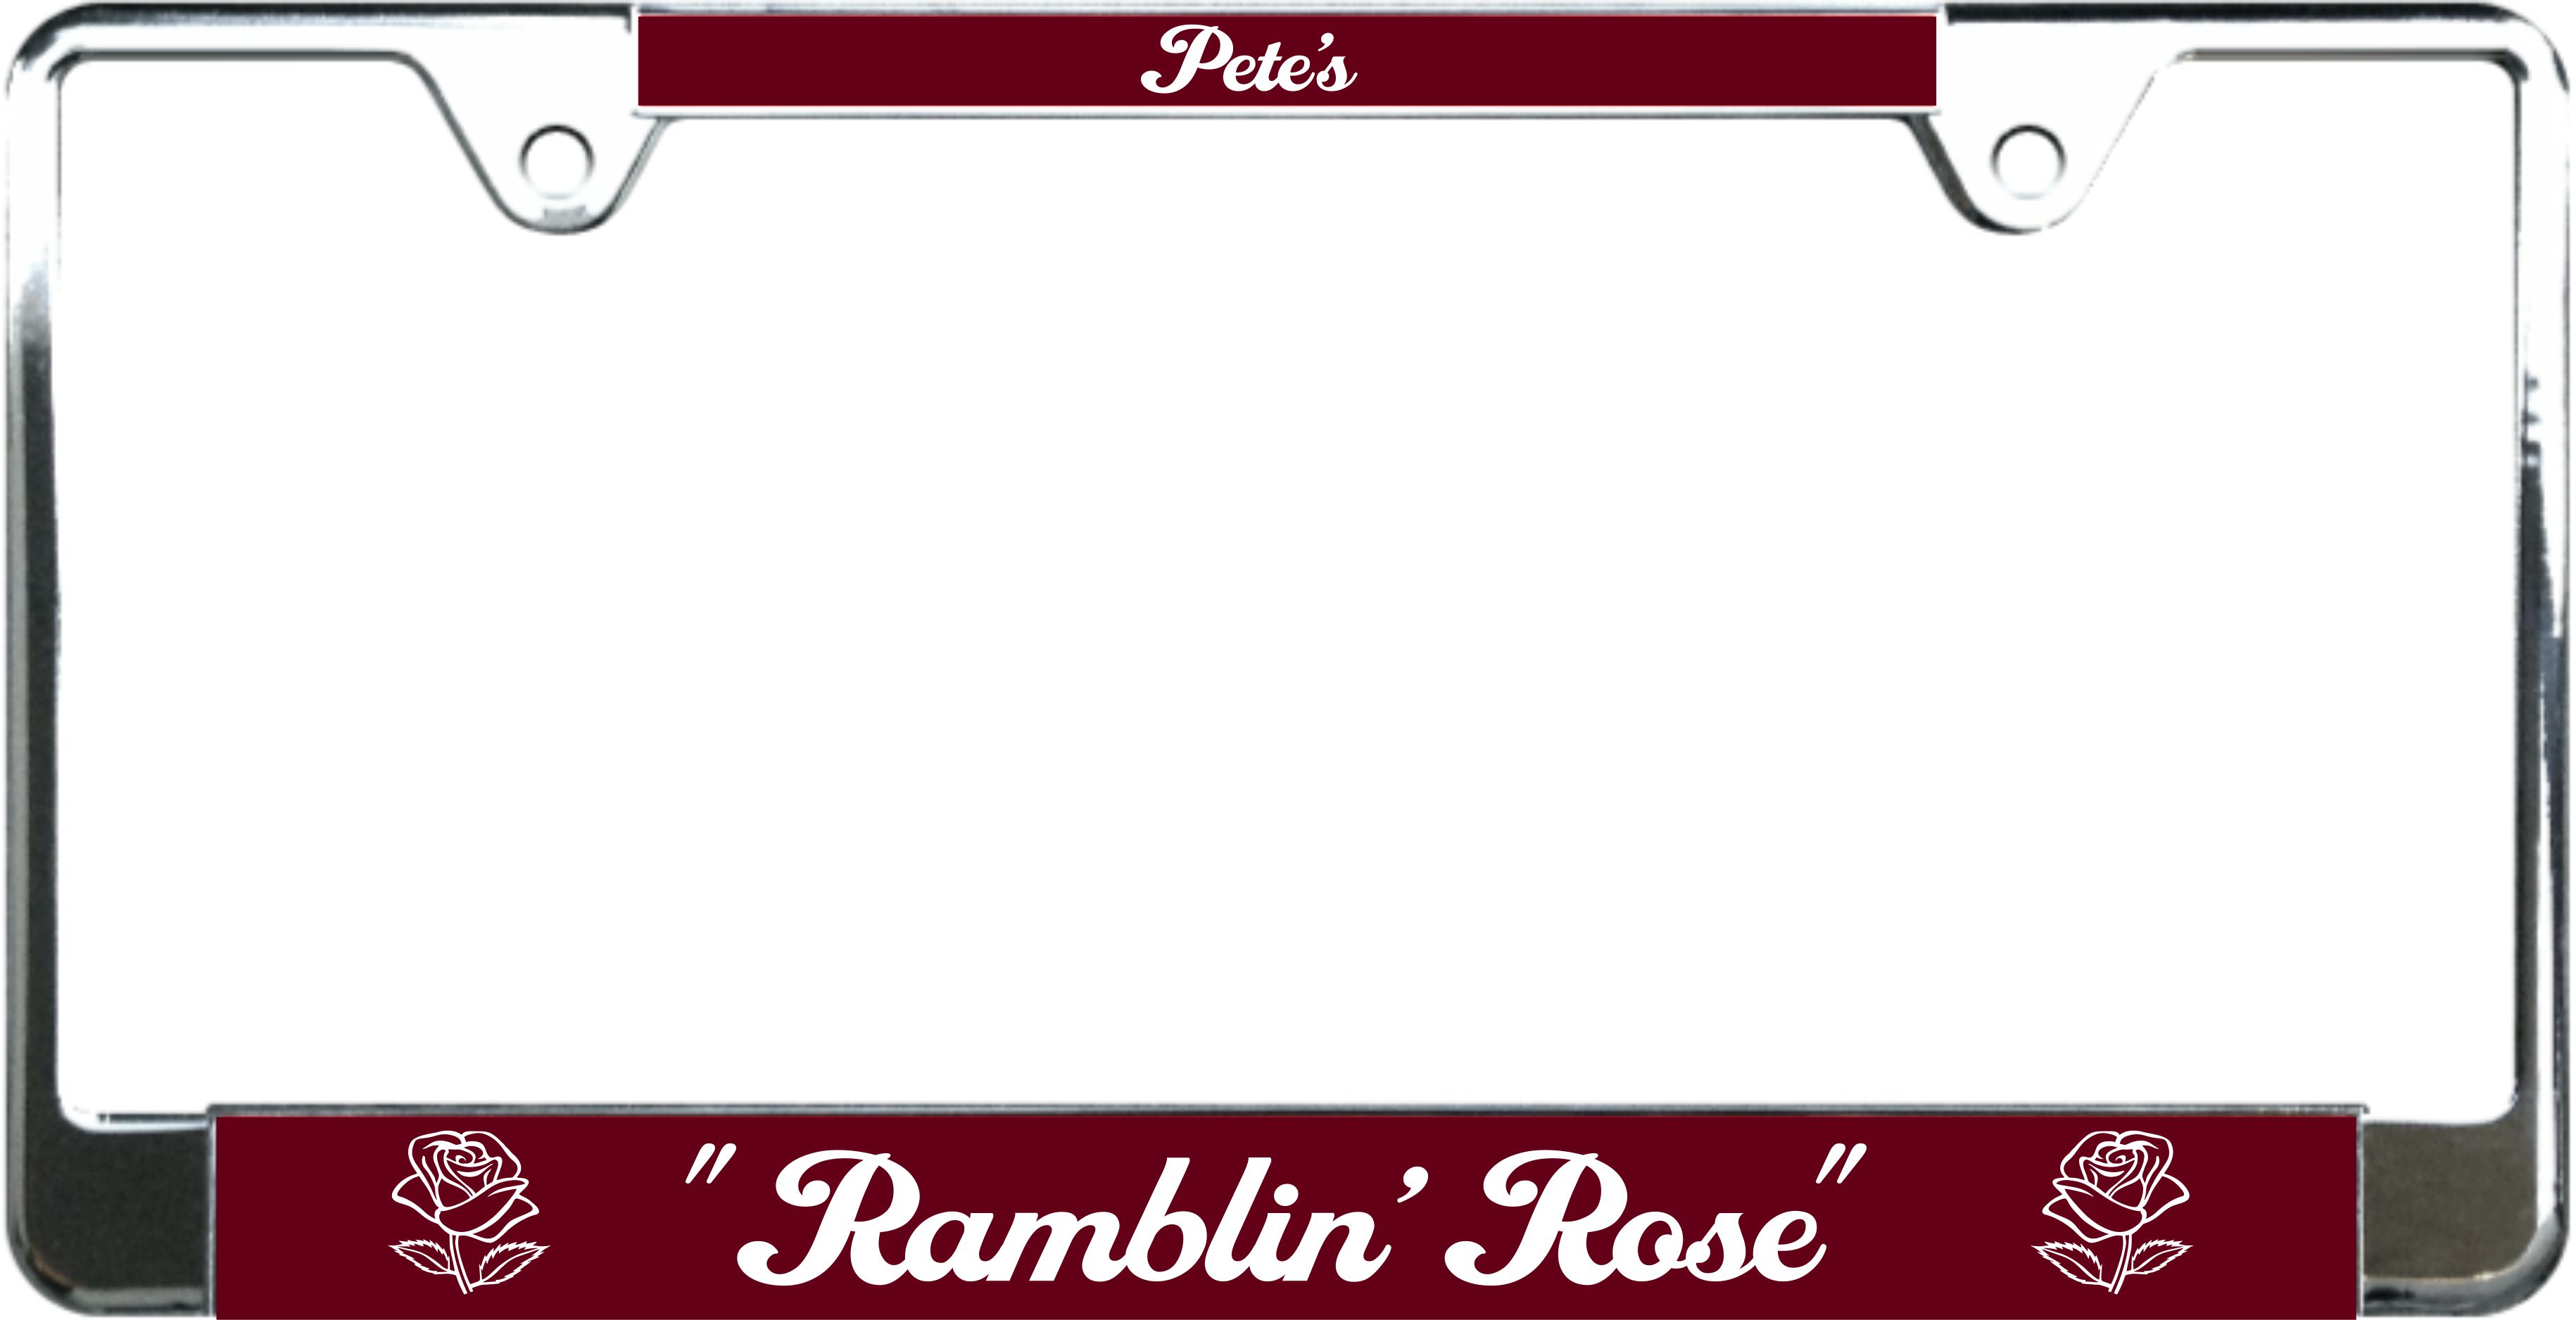 Ramblin' Rose - custom metal license plate frame